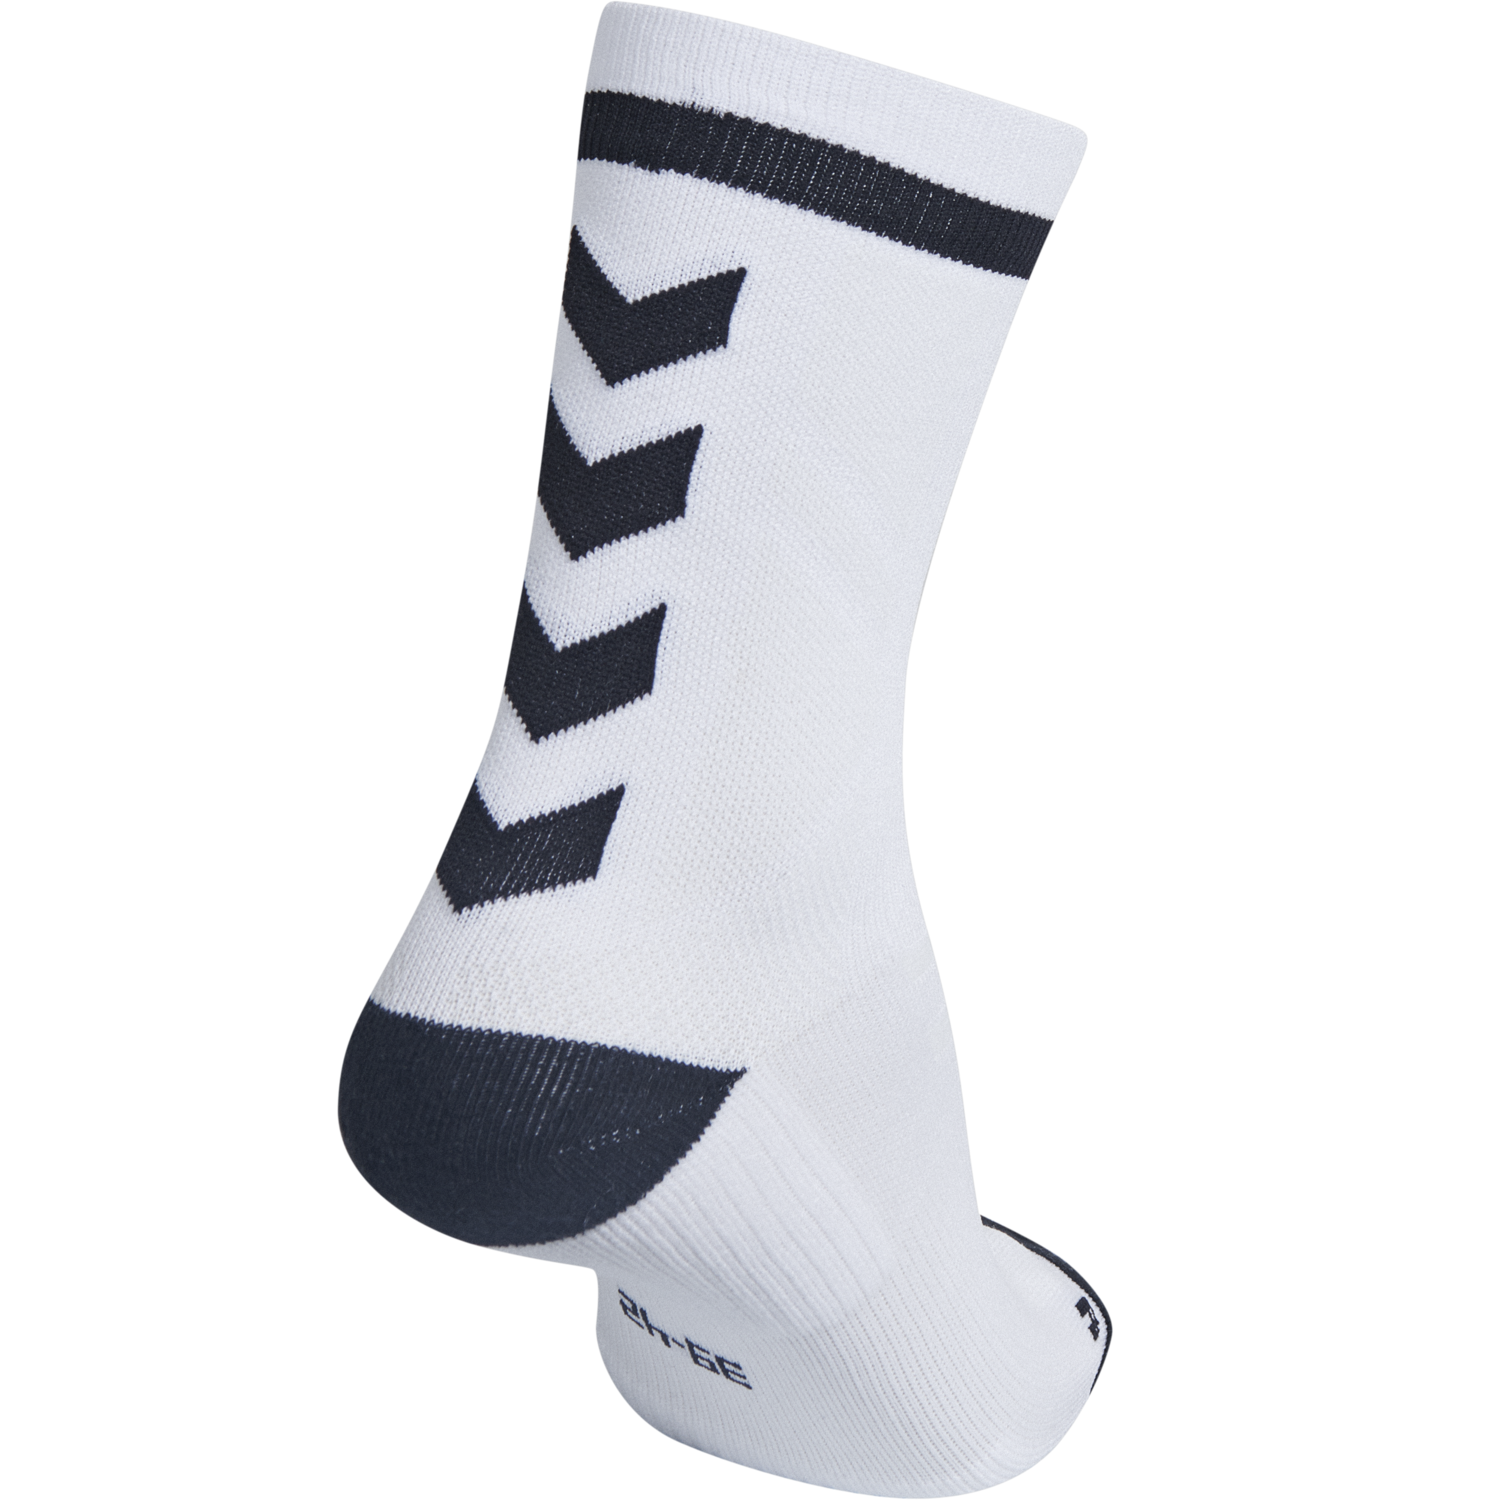 Hummel Elite Indoor Sock Low Sportsocken Socken Weiß/Schwarz 204043-9124 